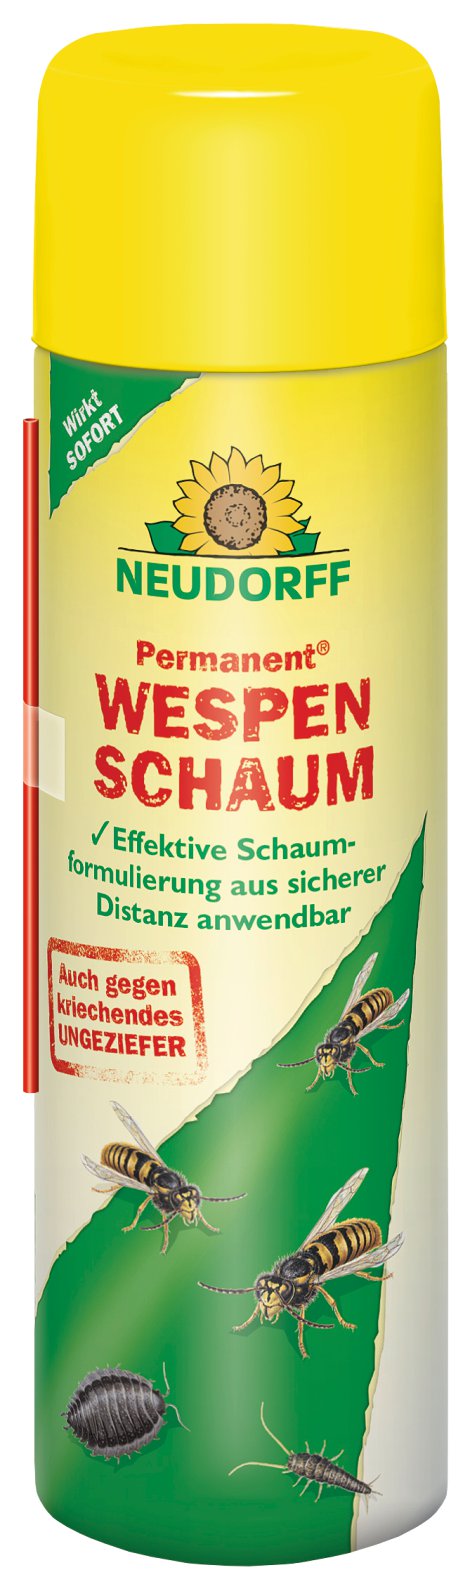 NEUDORFF Wespenschaum Permanent 500 ml